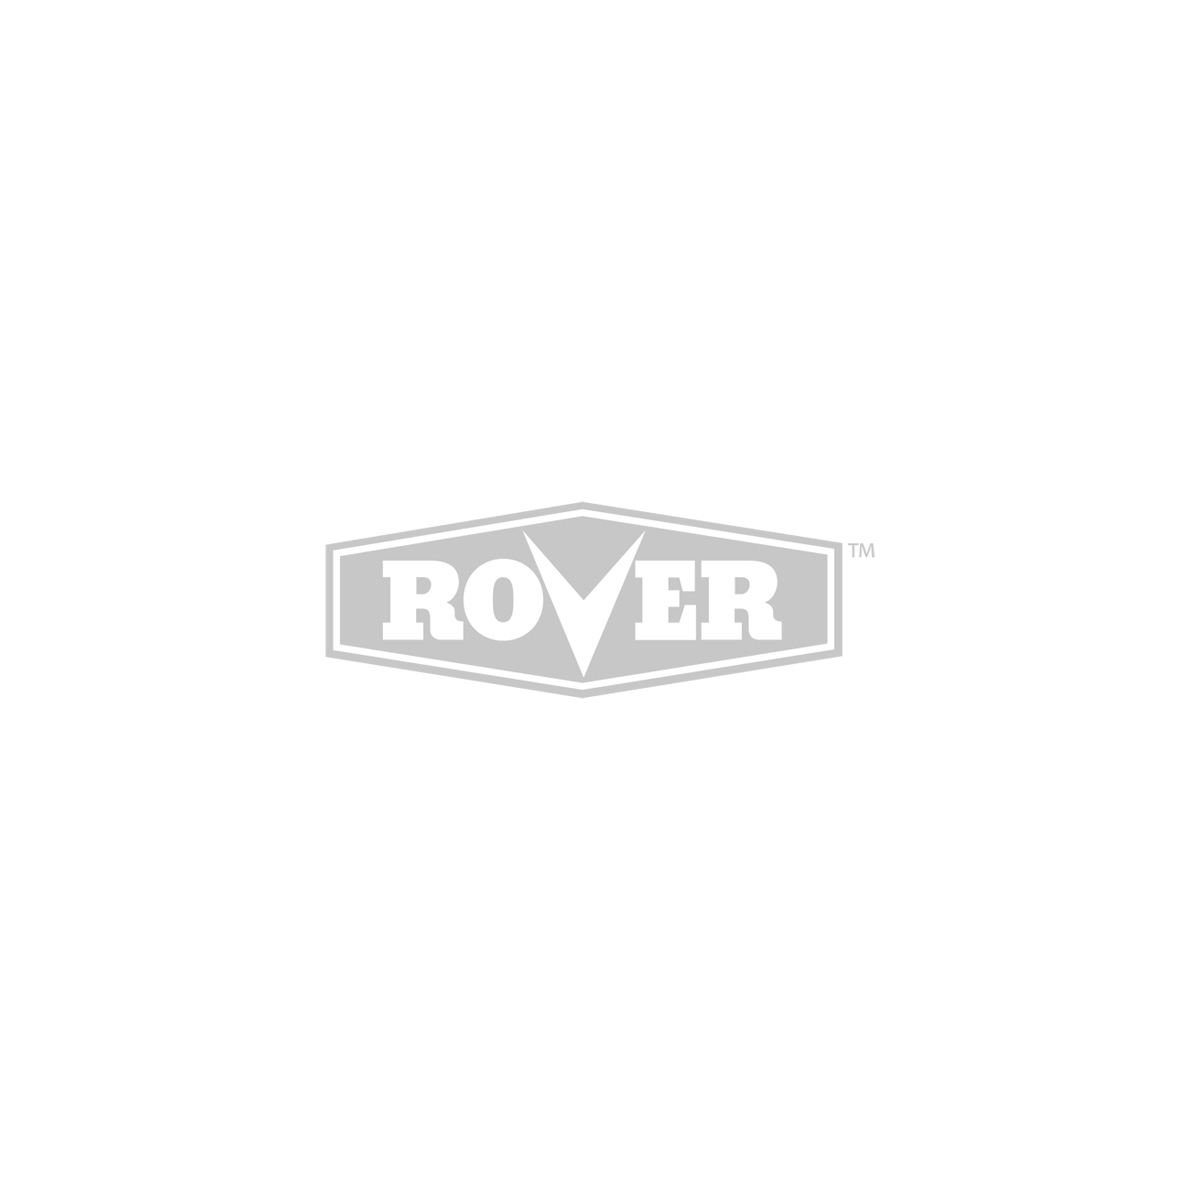 Rover Shoulder Strap